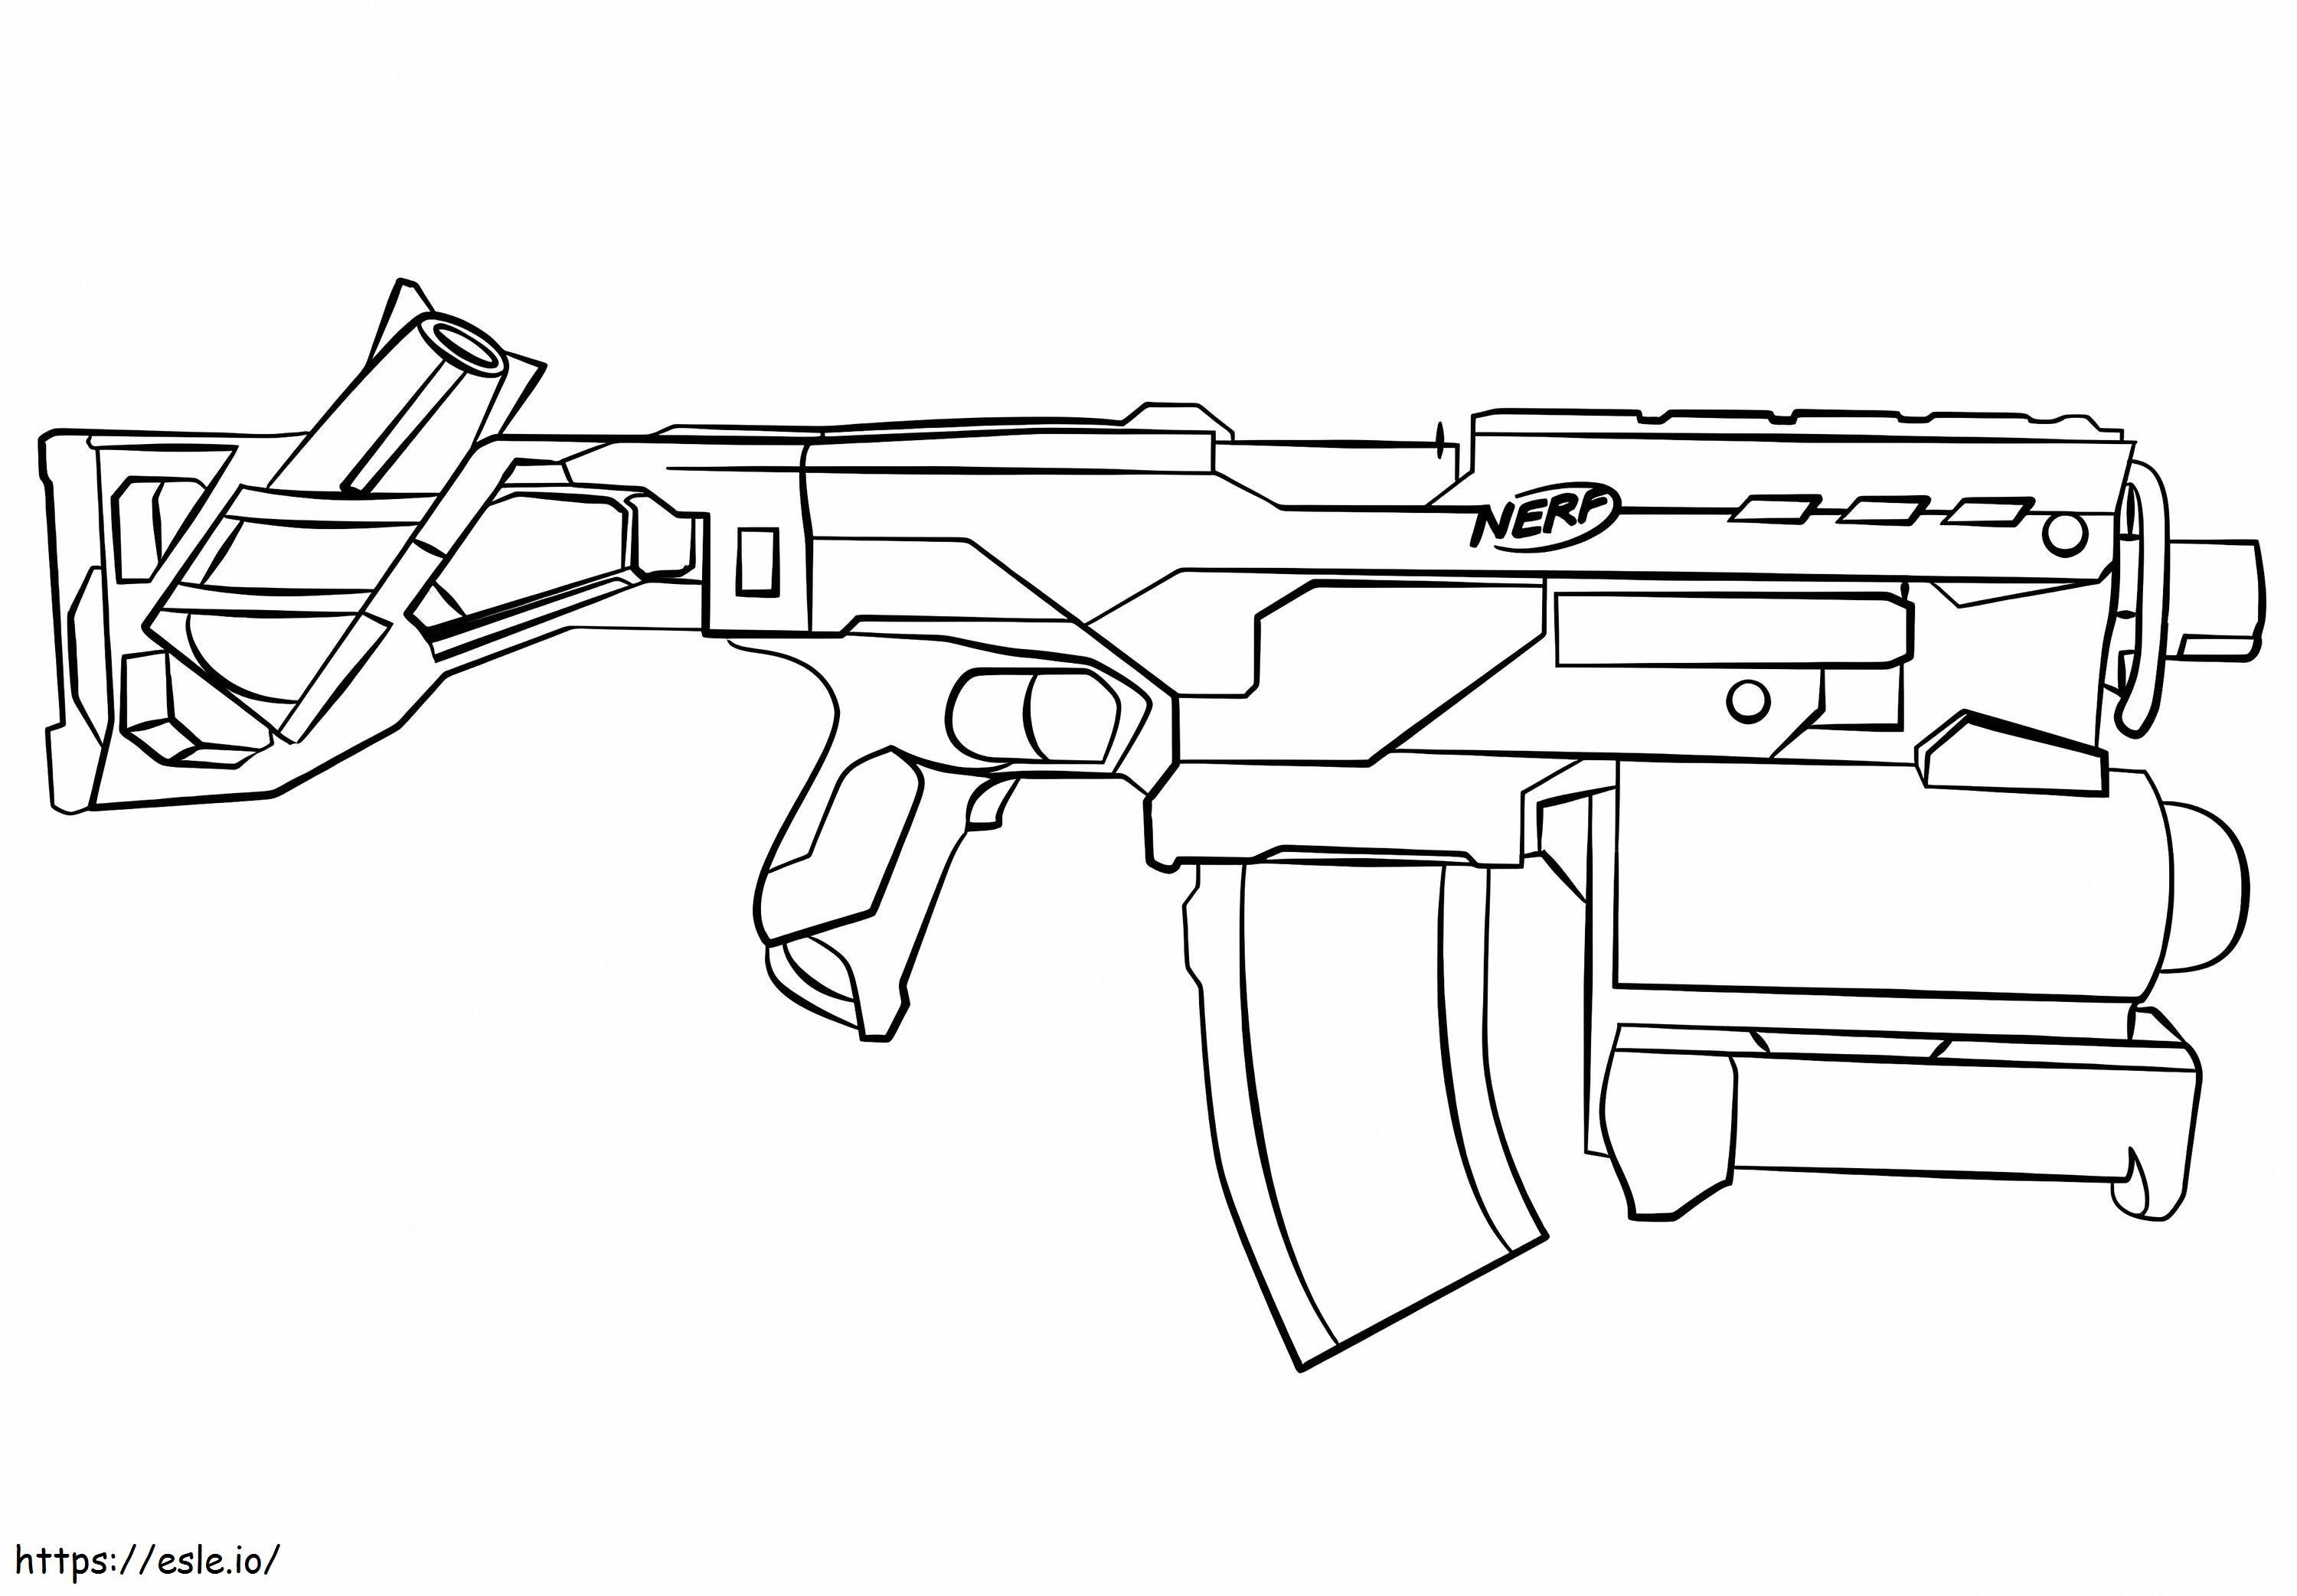 Fantastica pistola Nerf da colorare